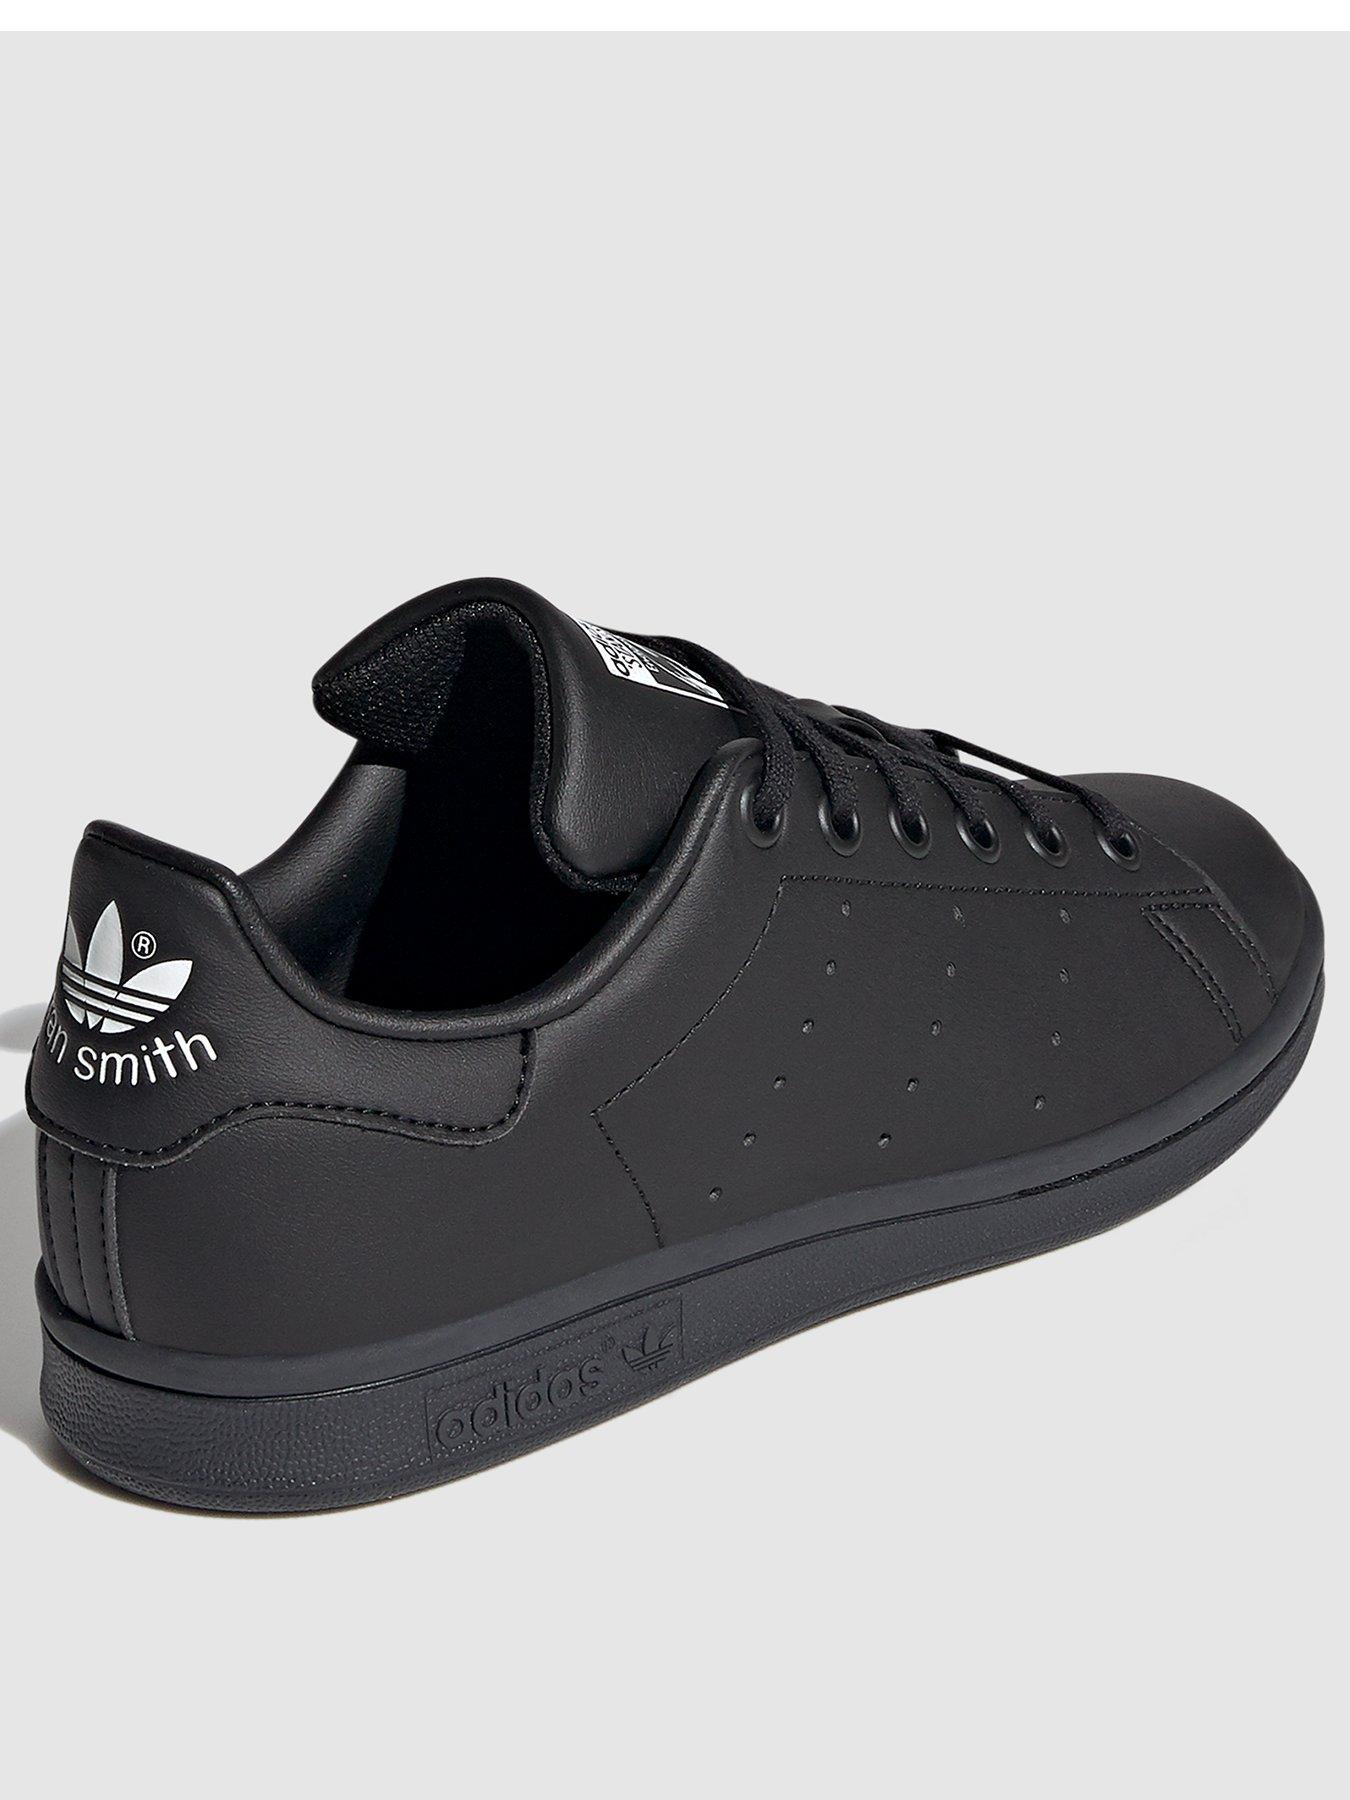 adidas Originals Unisex Junior Stan Smith Trainers - Black/White |